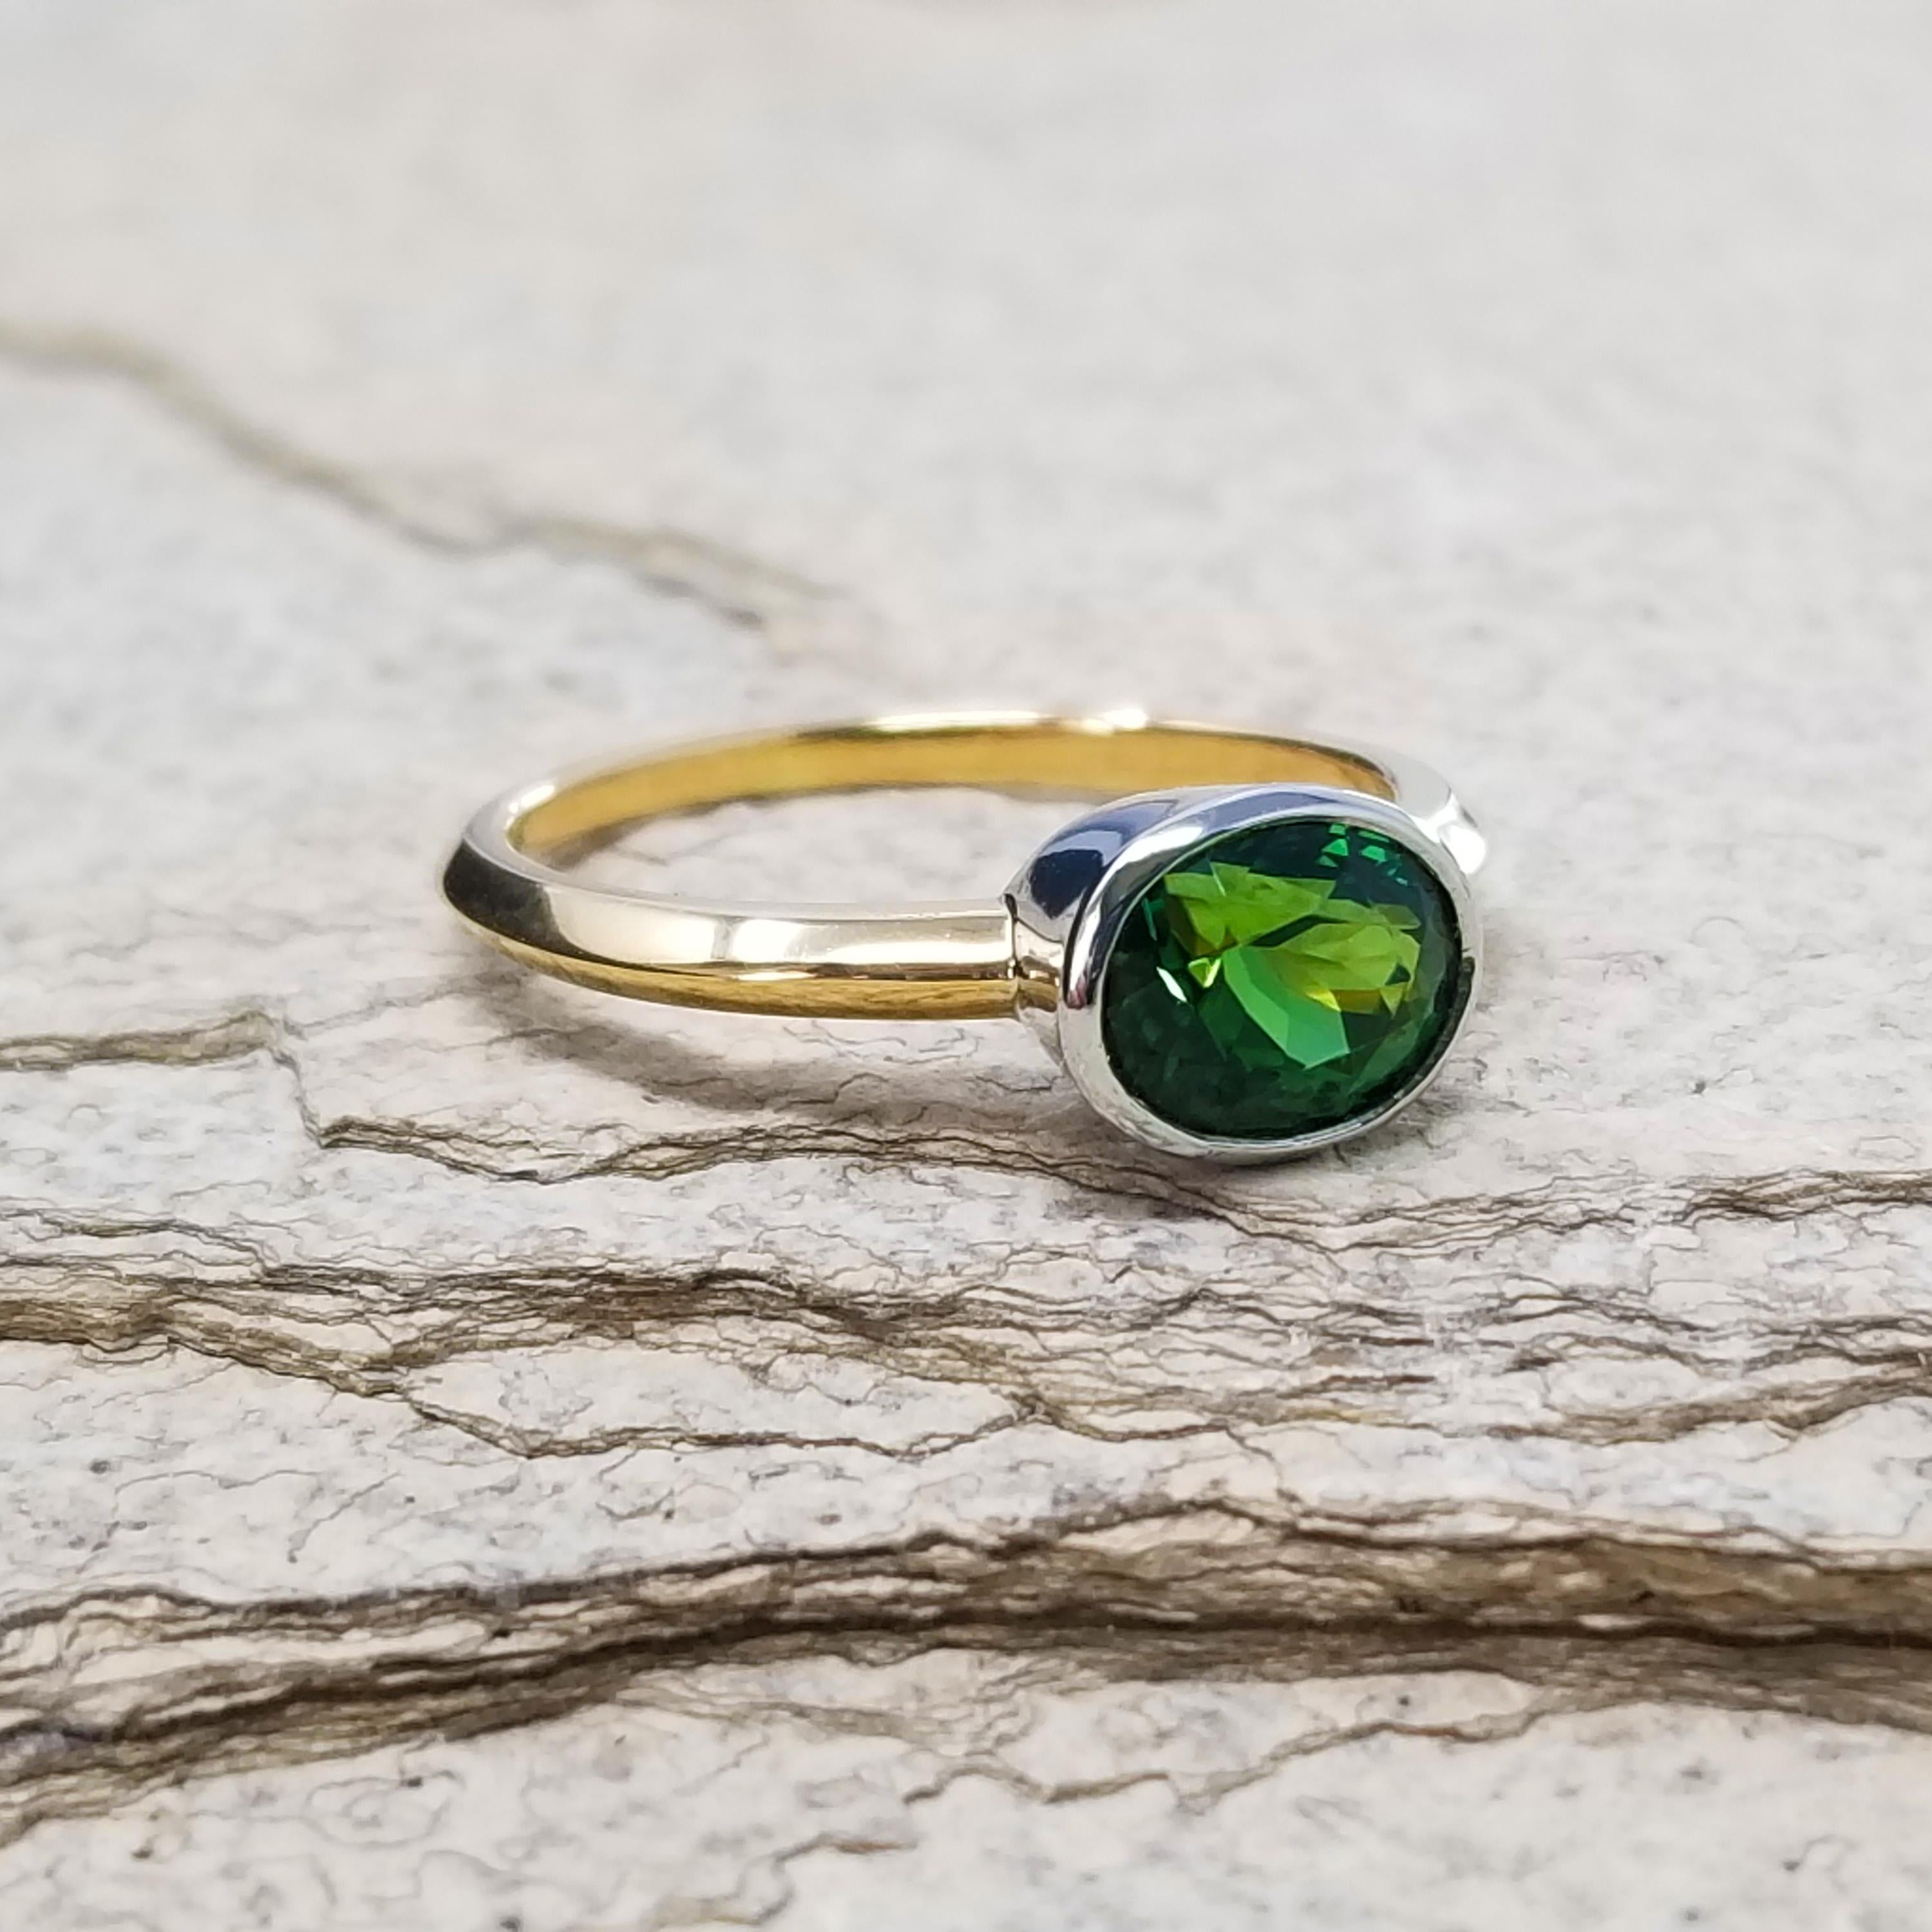 Das satte Grün dieses farbenprächtigen Chromturmalins ist absolut atemberaubend. Die Lebendigkeit dieses gut geschliffenen Edelsteins kommt in diesem Ring elegant zur Geltung.

